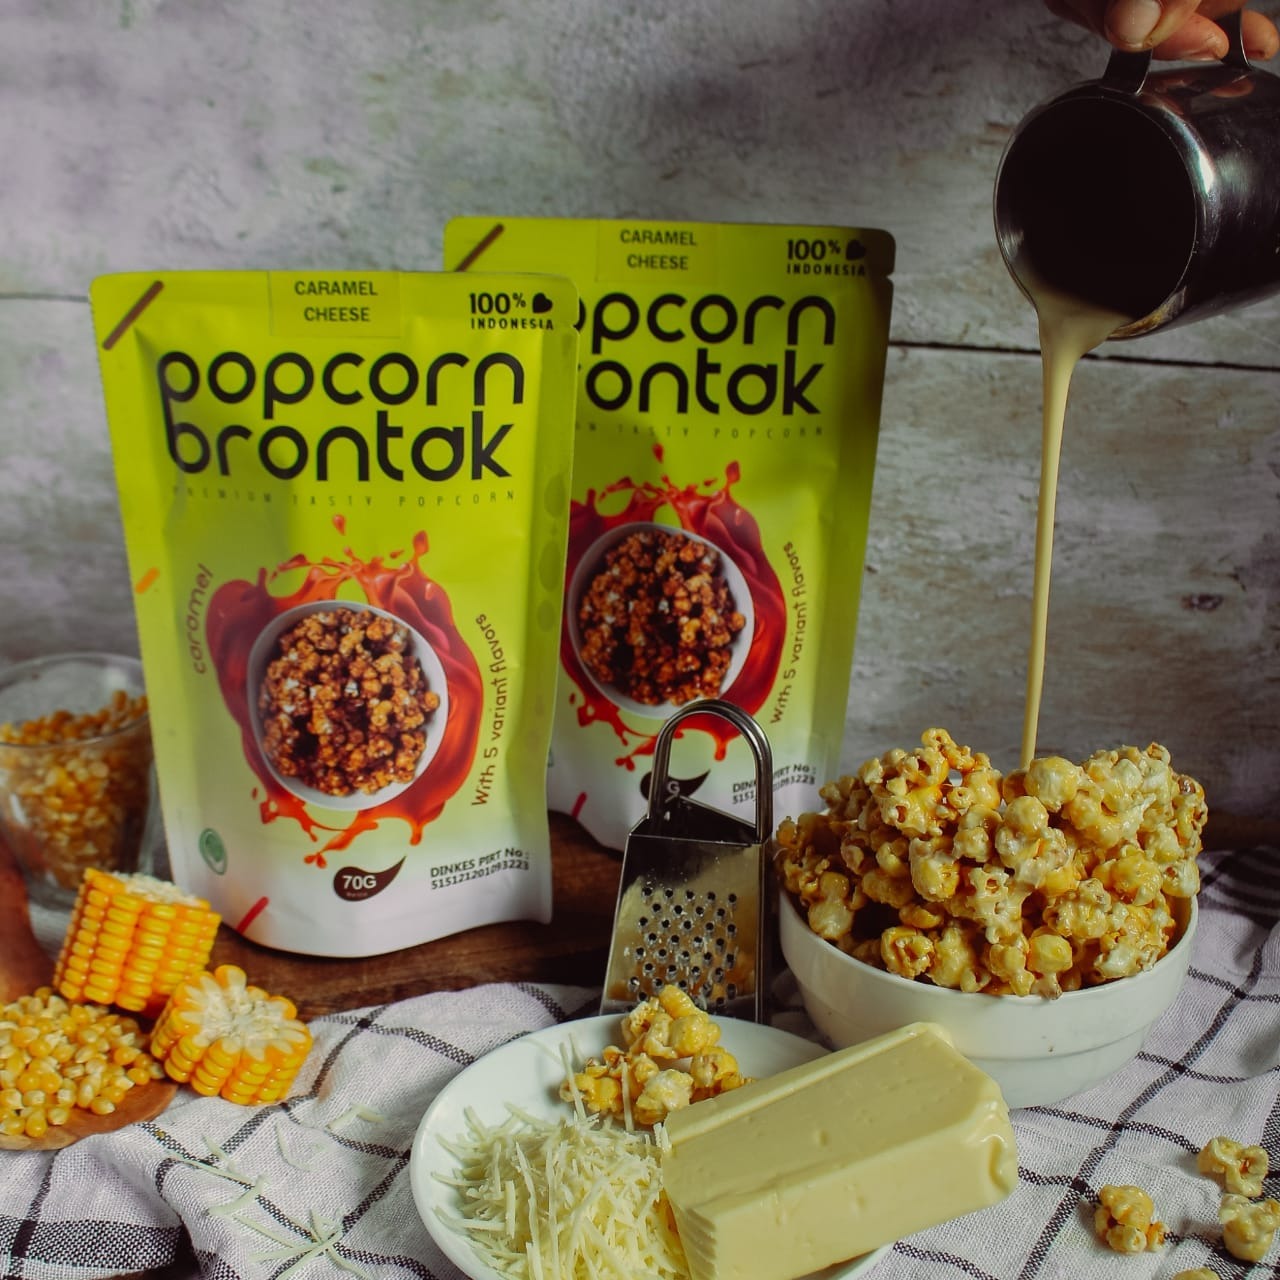 Popcorn Brontak